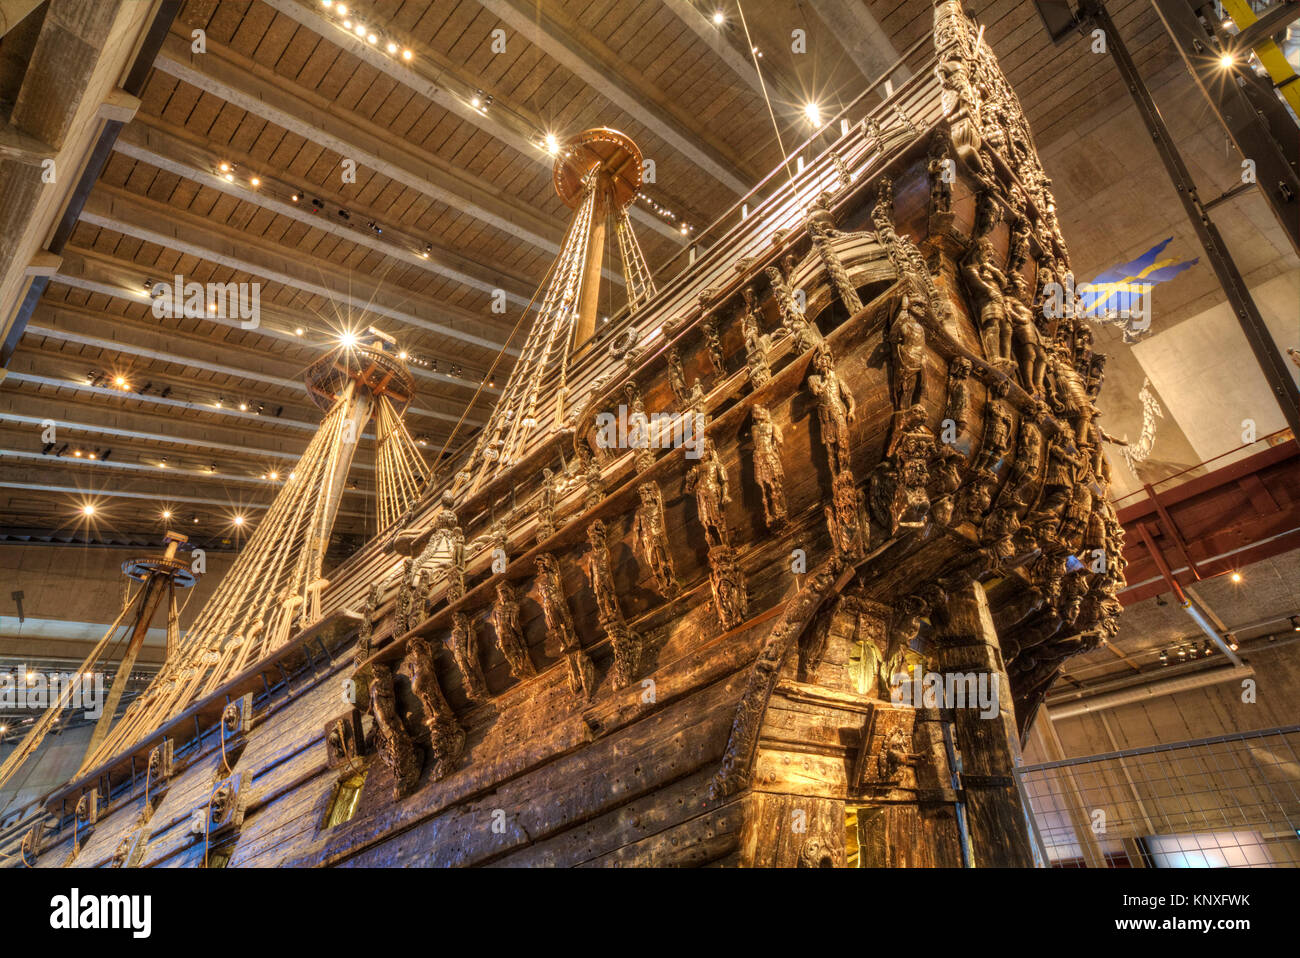 Stern, navire de guerre du 17ème siècle, musée Vasa (Vasamuseet) Maritime, l'île de Djurgarden, Stockholm, Suède Banque D'Images